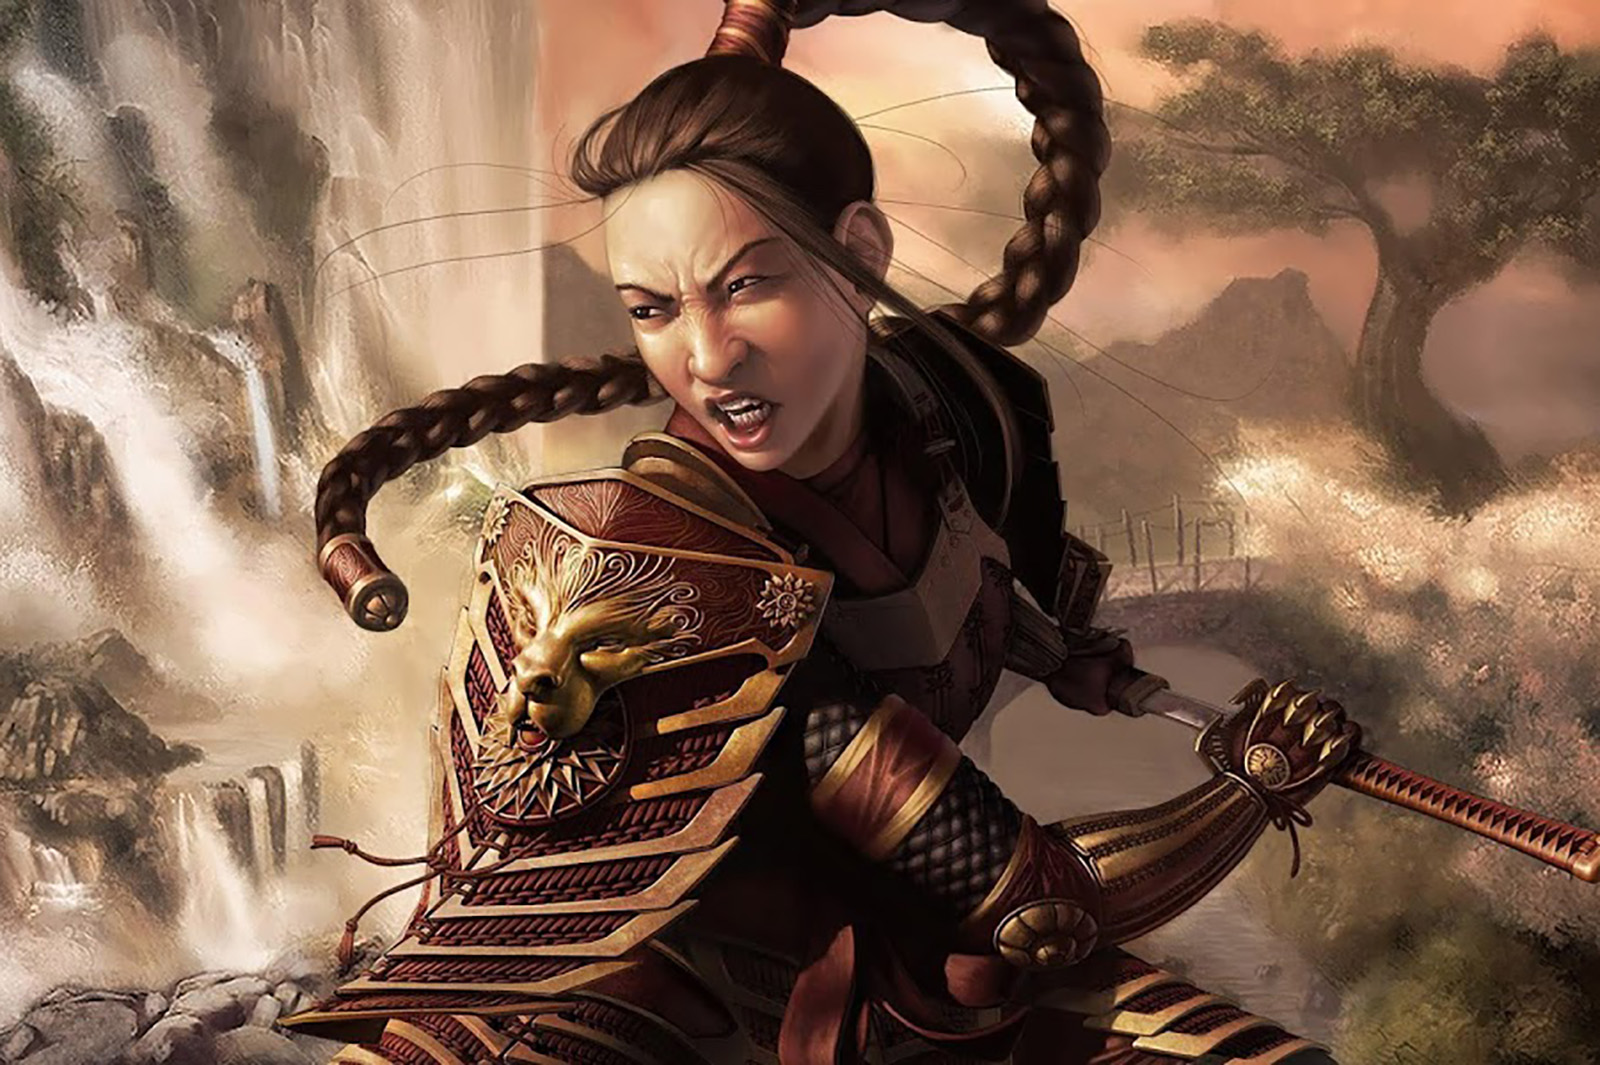 Digital illustration of Mulan